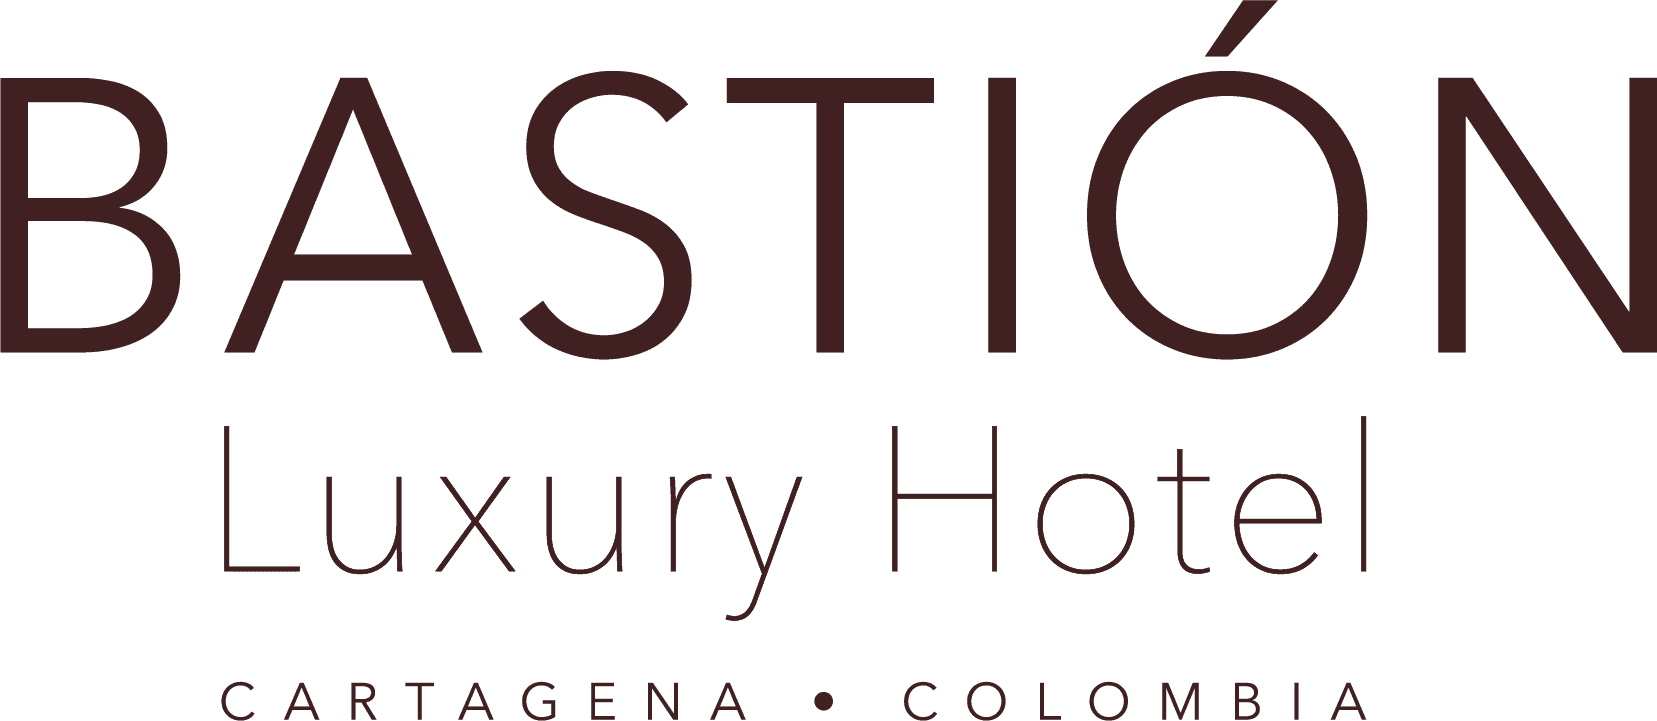 Bastión Luxury Hotel